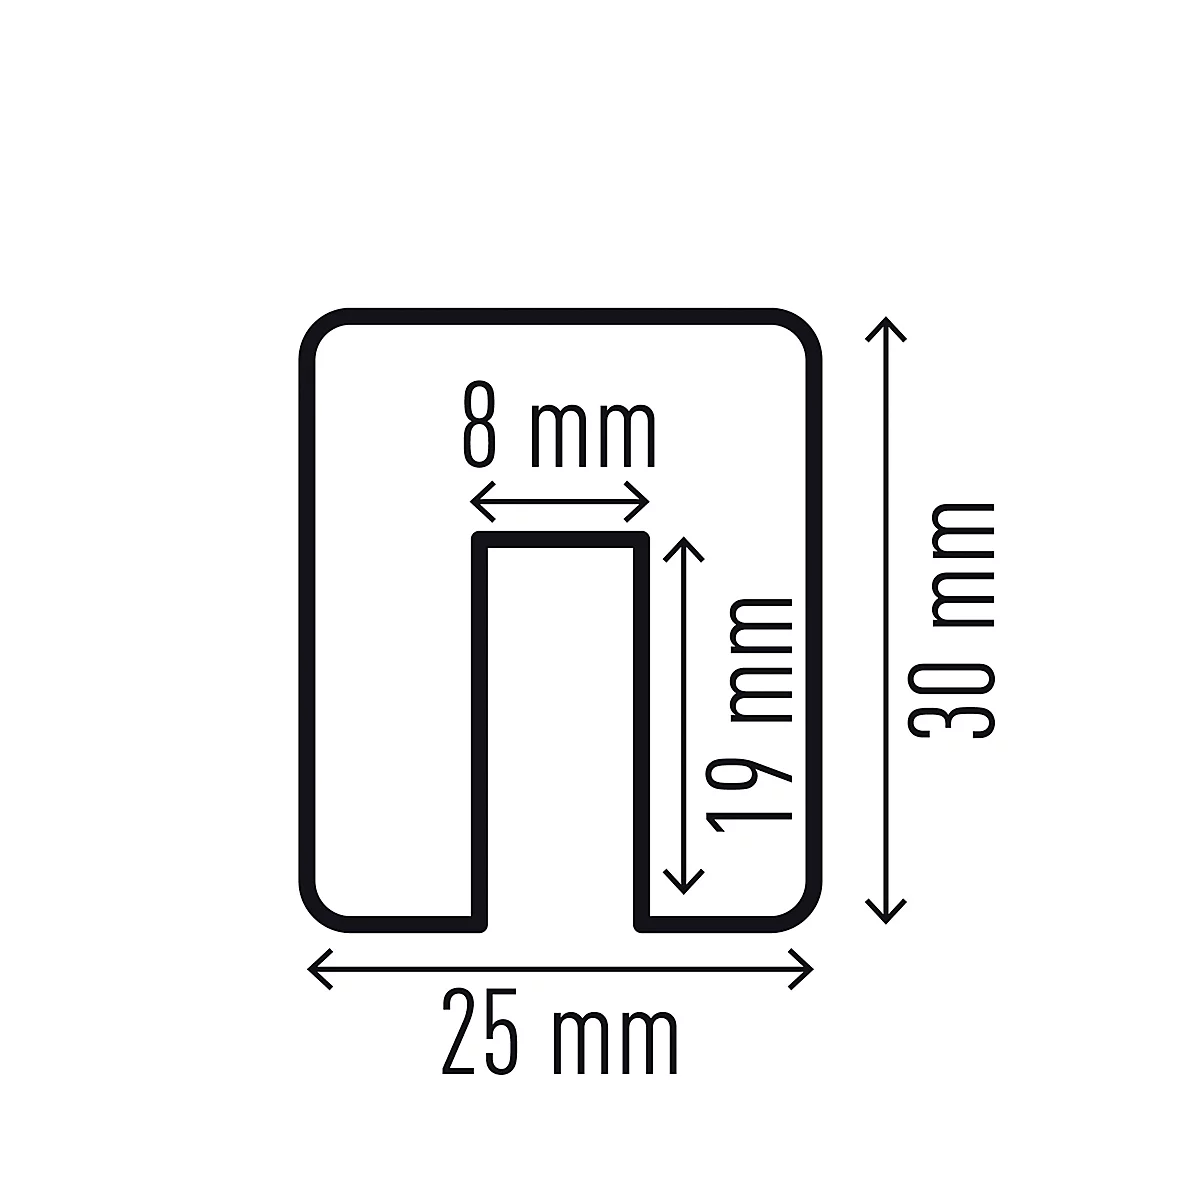 Kantenschutzprofil Durable E8, rechteckig, selbstklebend, für Innen- & Außenbereich, Aussparung 8 mm, L 1000 mm, PU-Schaum, gelb/schwarz